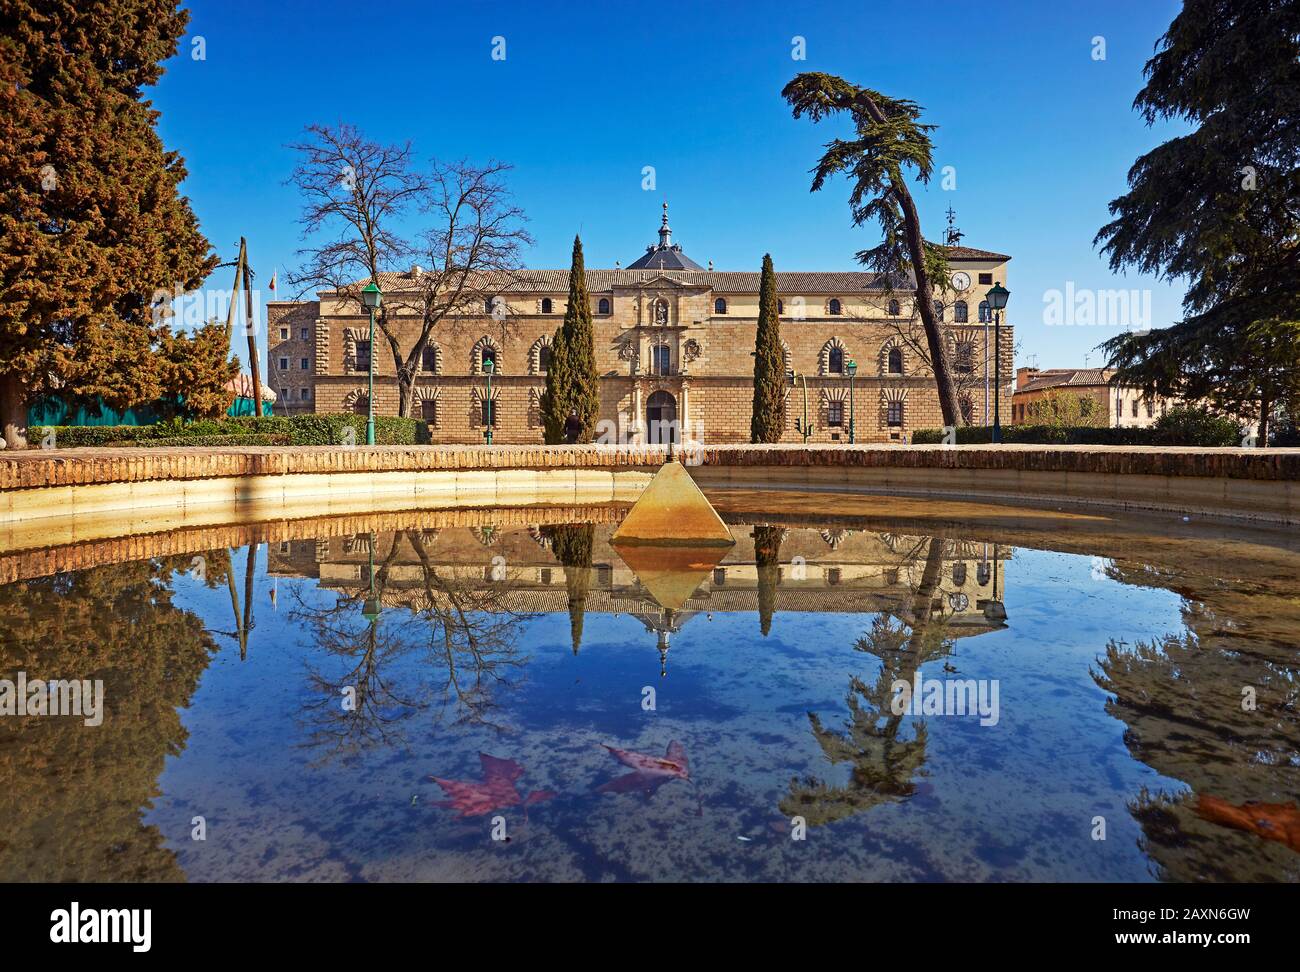 Das Kunstmuseum "Hospital de Tavera" spiegelte sich im Pool wider. Erbaut zwischen 1541 und 1603 auf Befehl von Kardinal Tavera Stockfoto